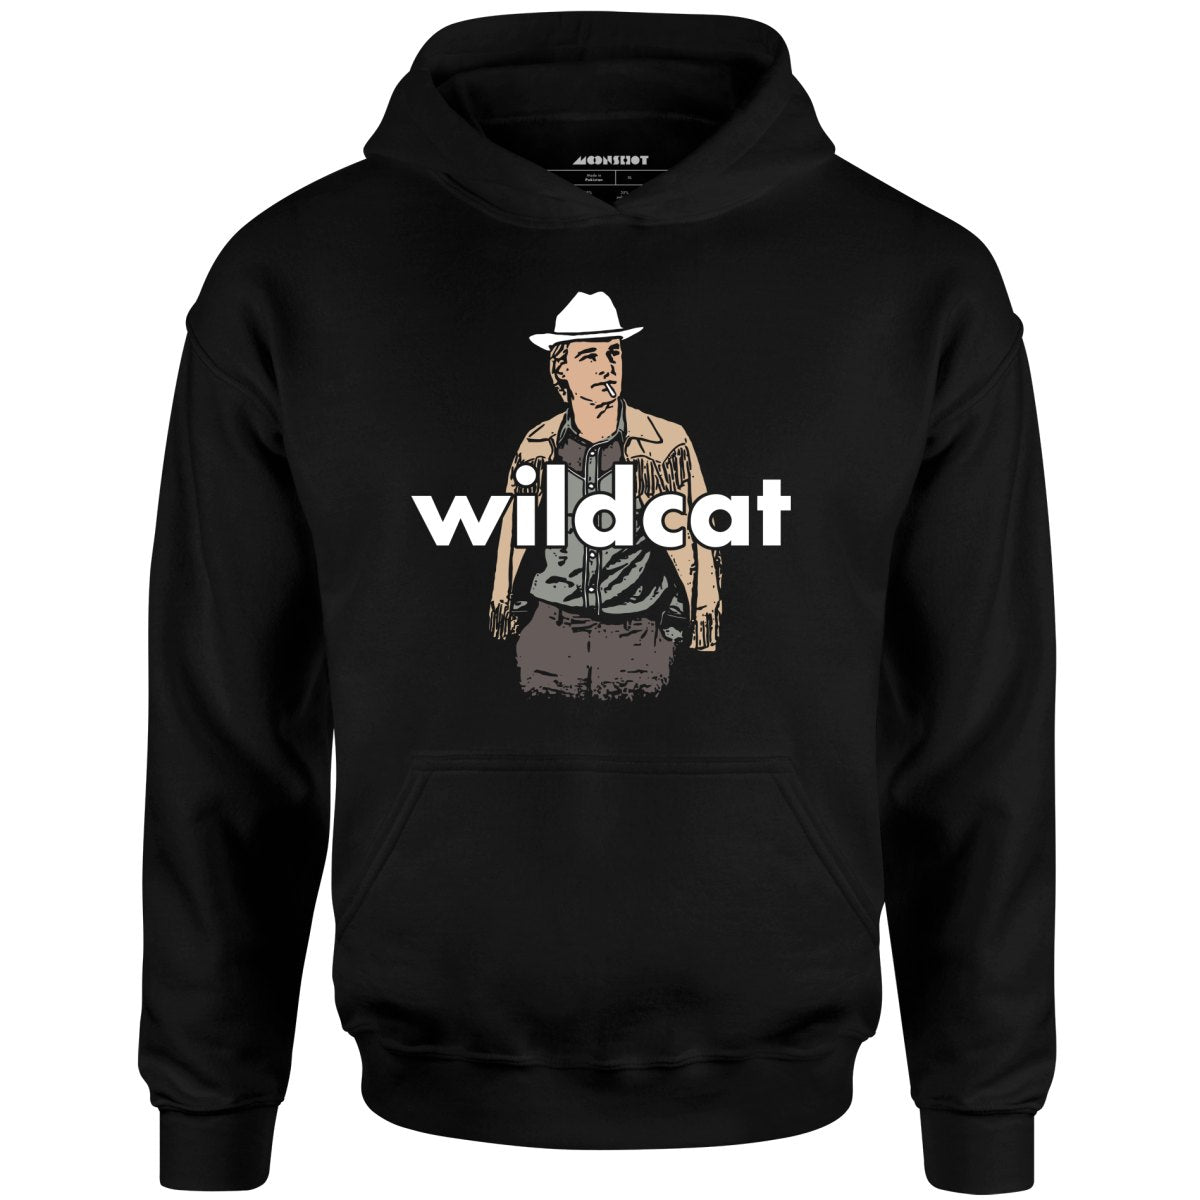 Wildcat - Unisex Hoodie